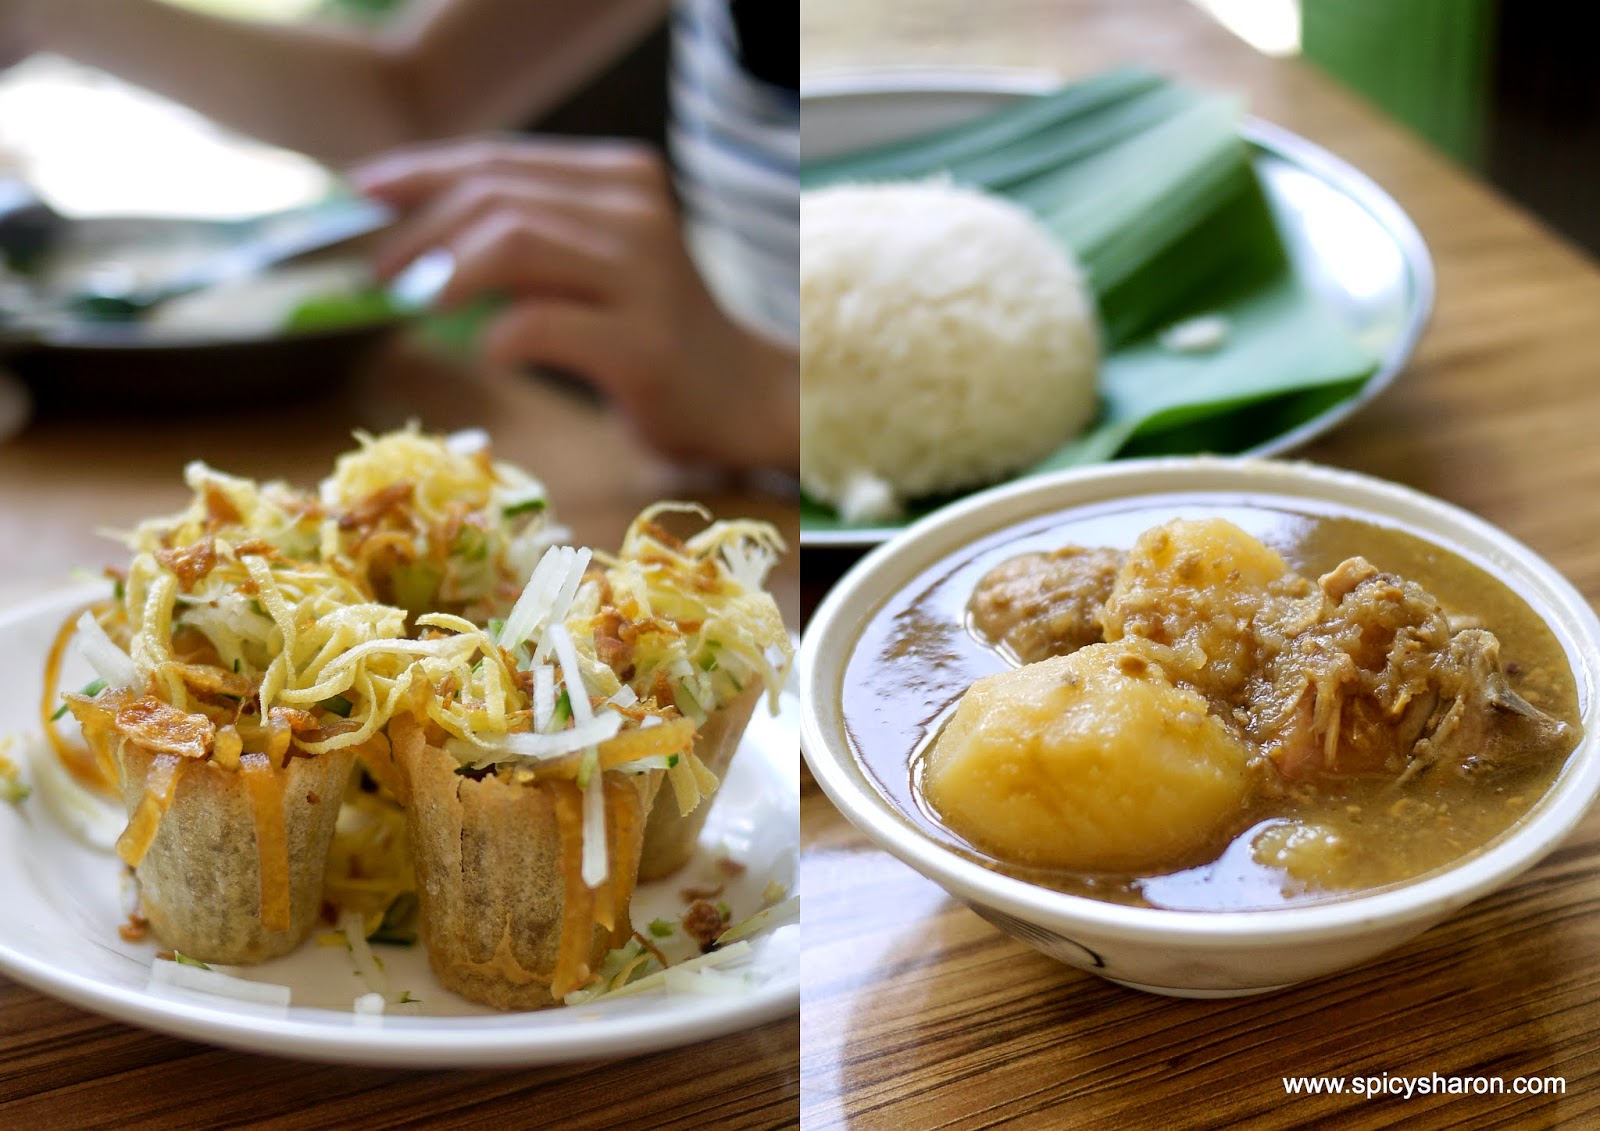 [CLOSED] Straits Food Company @ Bangsar - Cheap Nyonya Food - Spicy